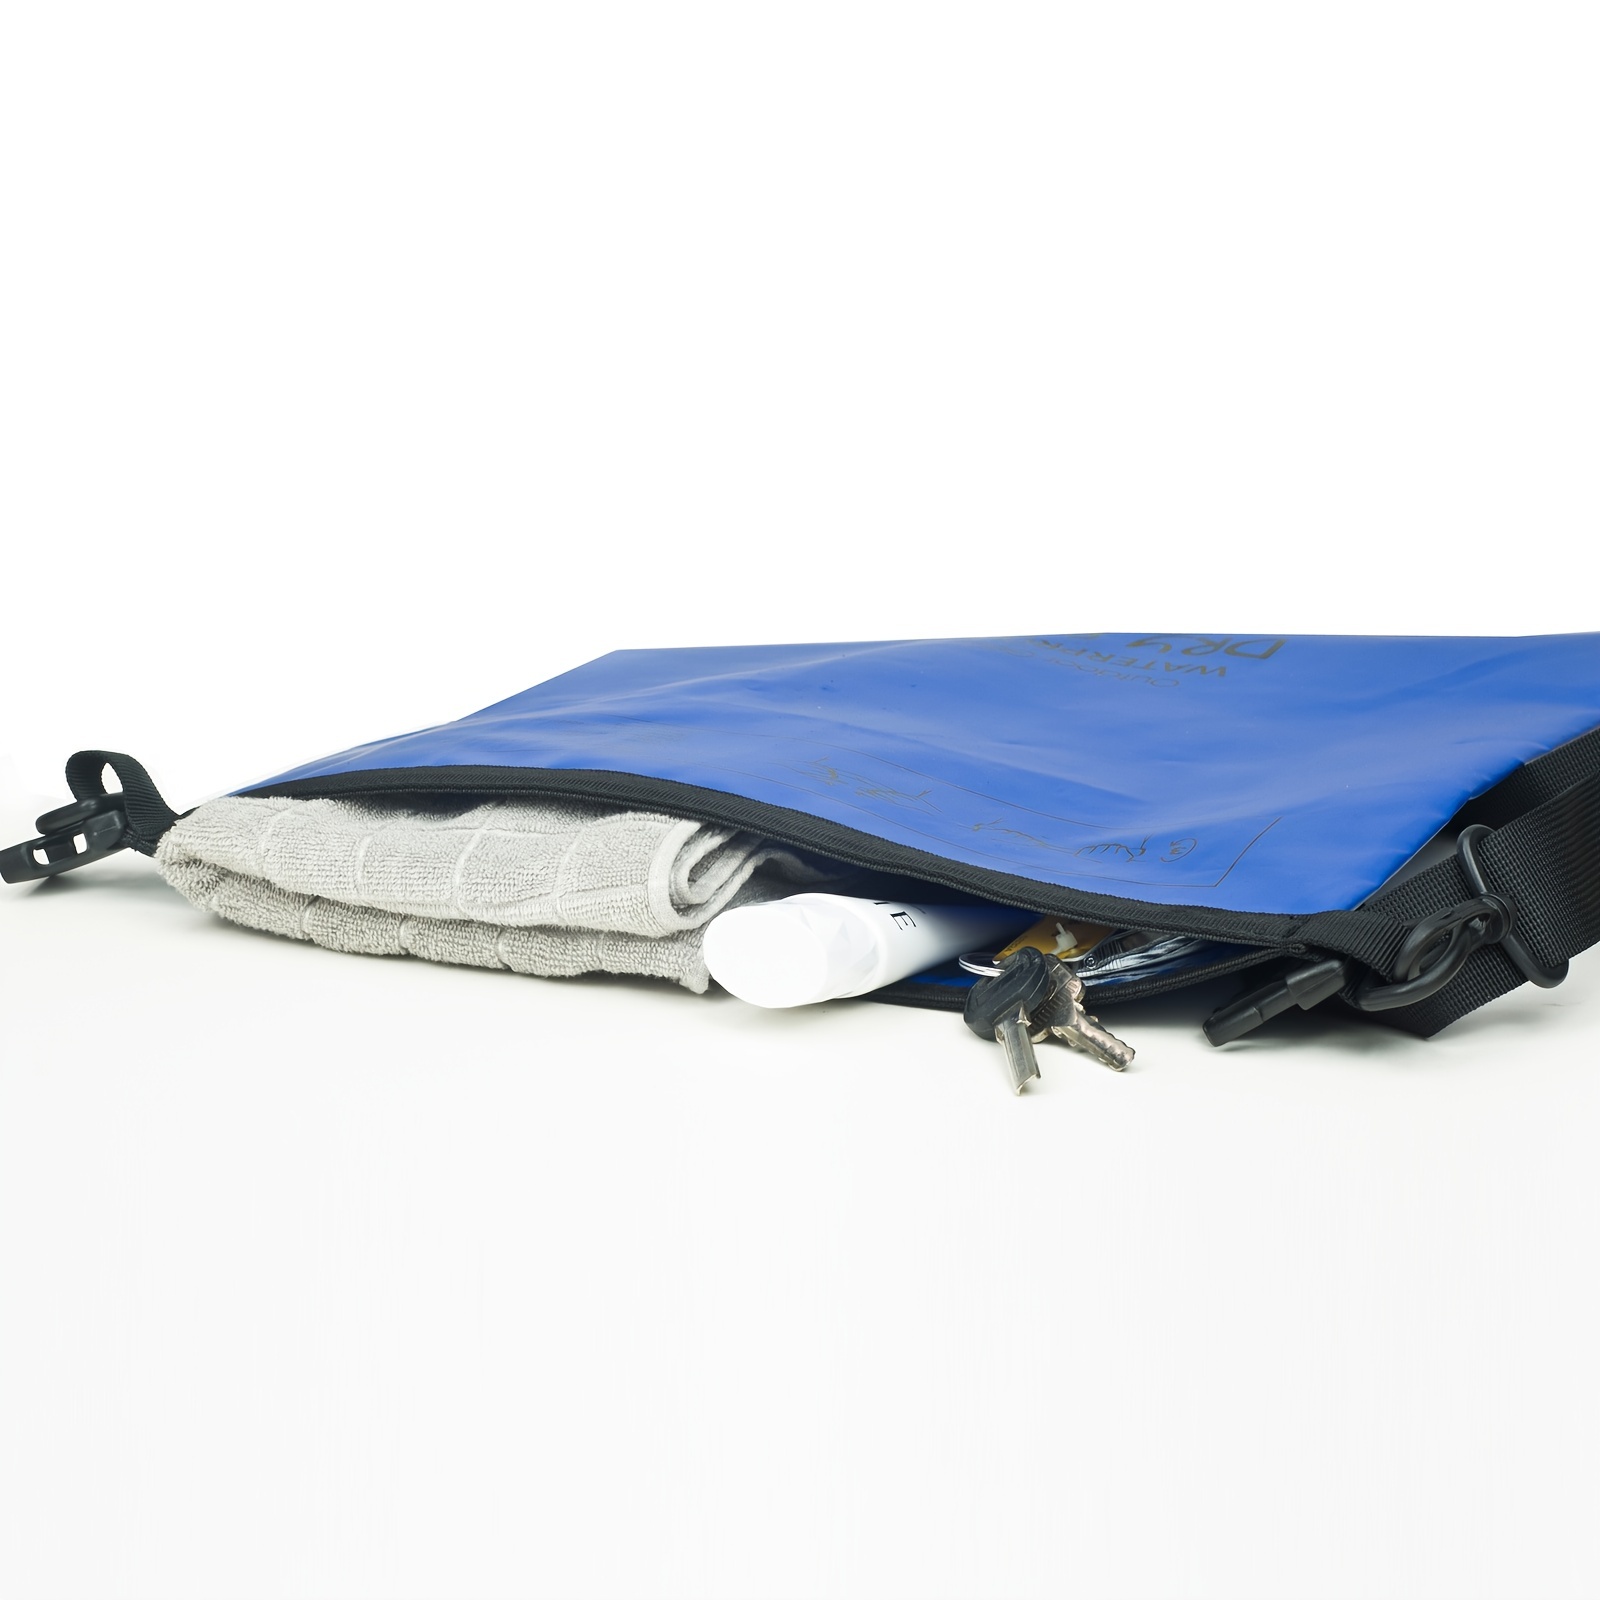  GLBSUNION Bolsa seca impermeable con correa para la cintura  (paquete de 2), la mejor manera de mantener tu teléfono y objetos de valor  seguros/secos, perfecta para canotaje, natación, esnórquel, kayak, playa